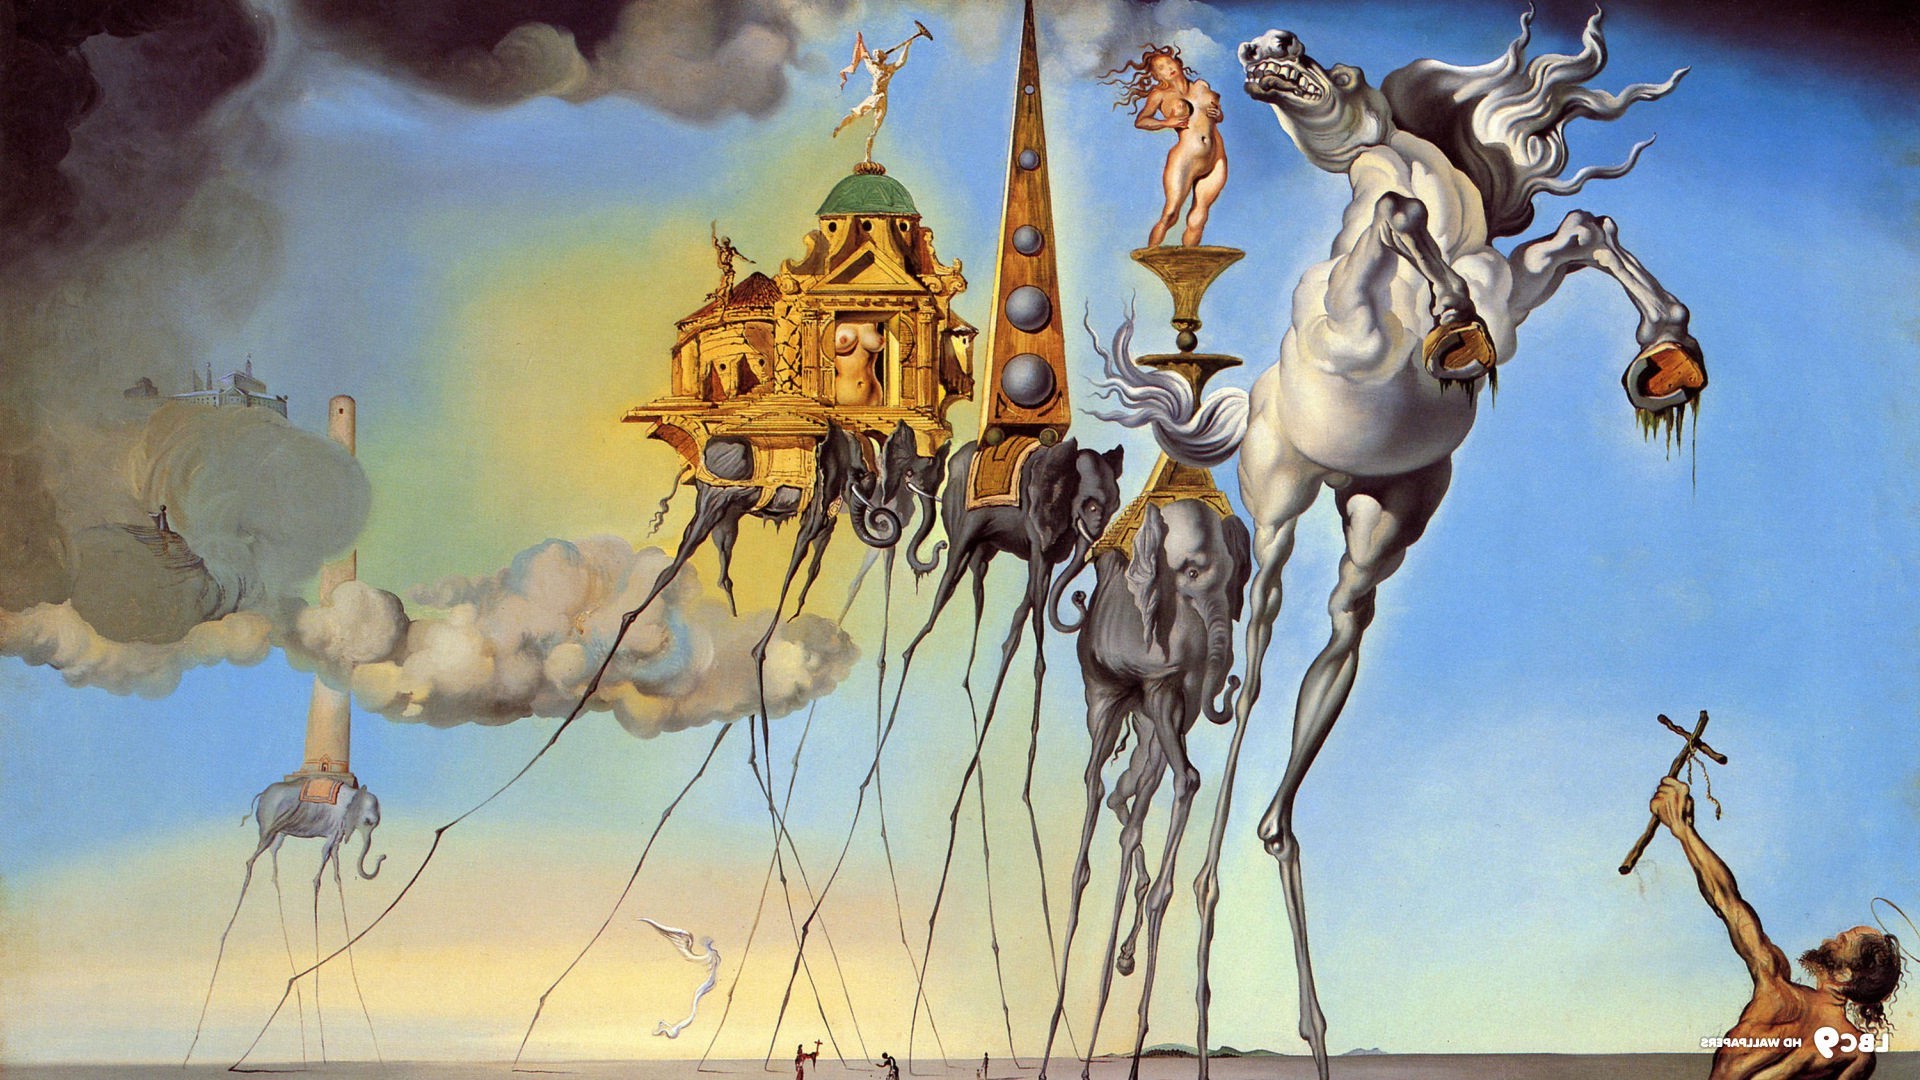 Salvador Dalí, Painting, Fantasy Art, Skull, War, Clocks, Time, Classic Art Wallpaper